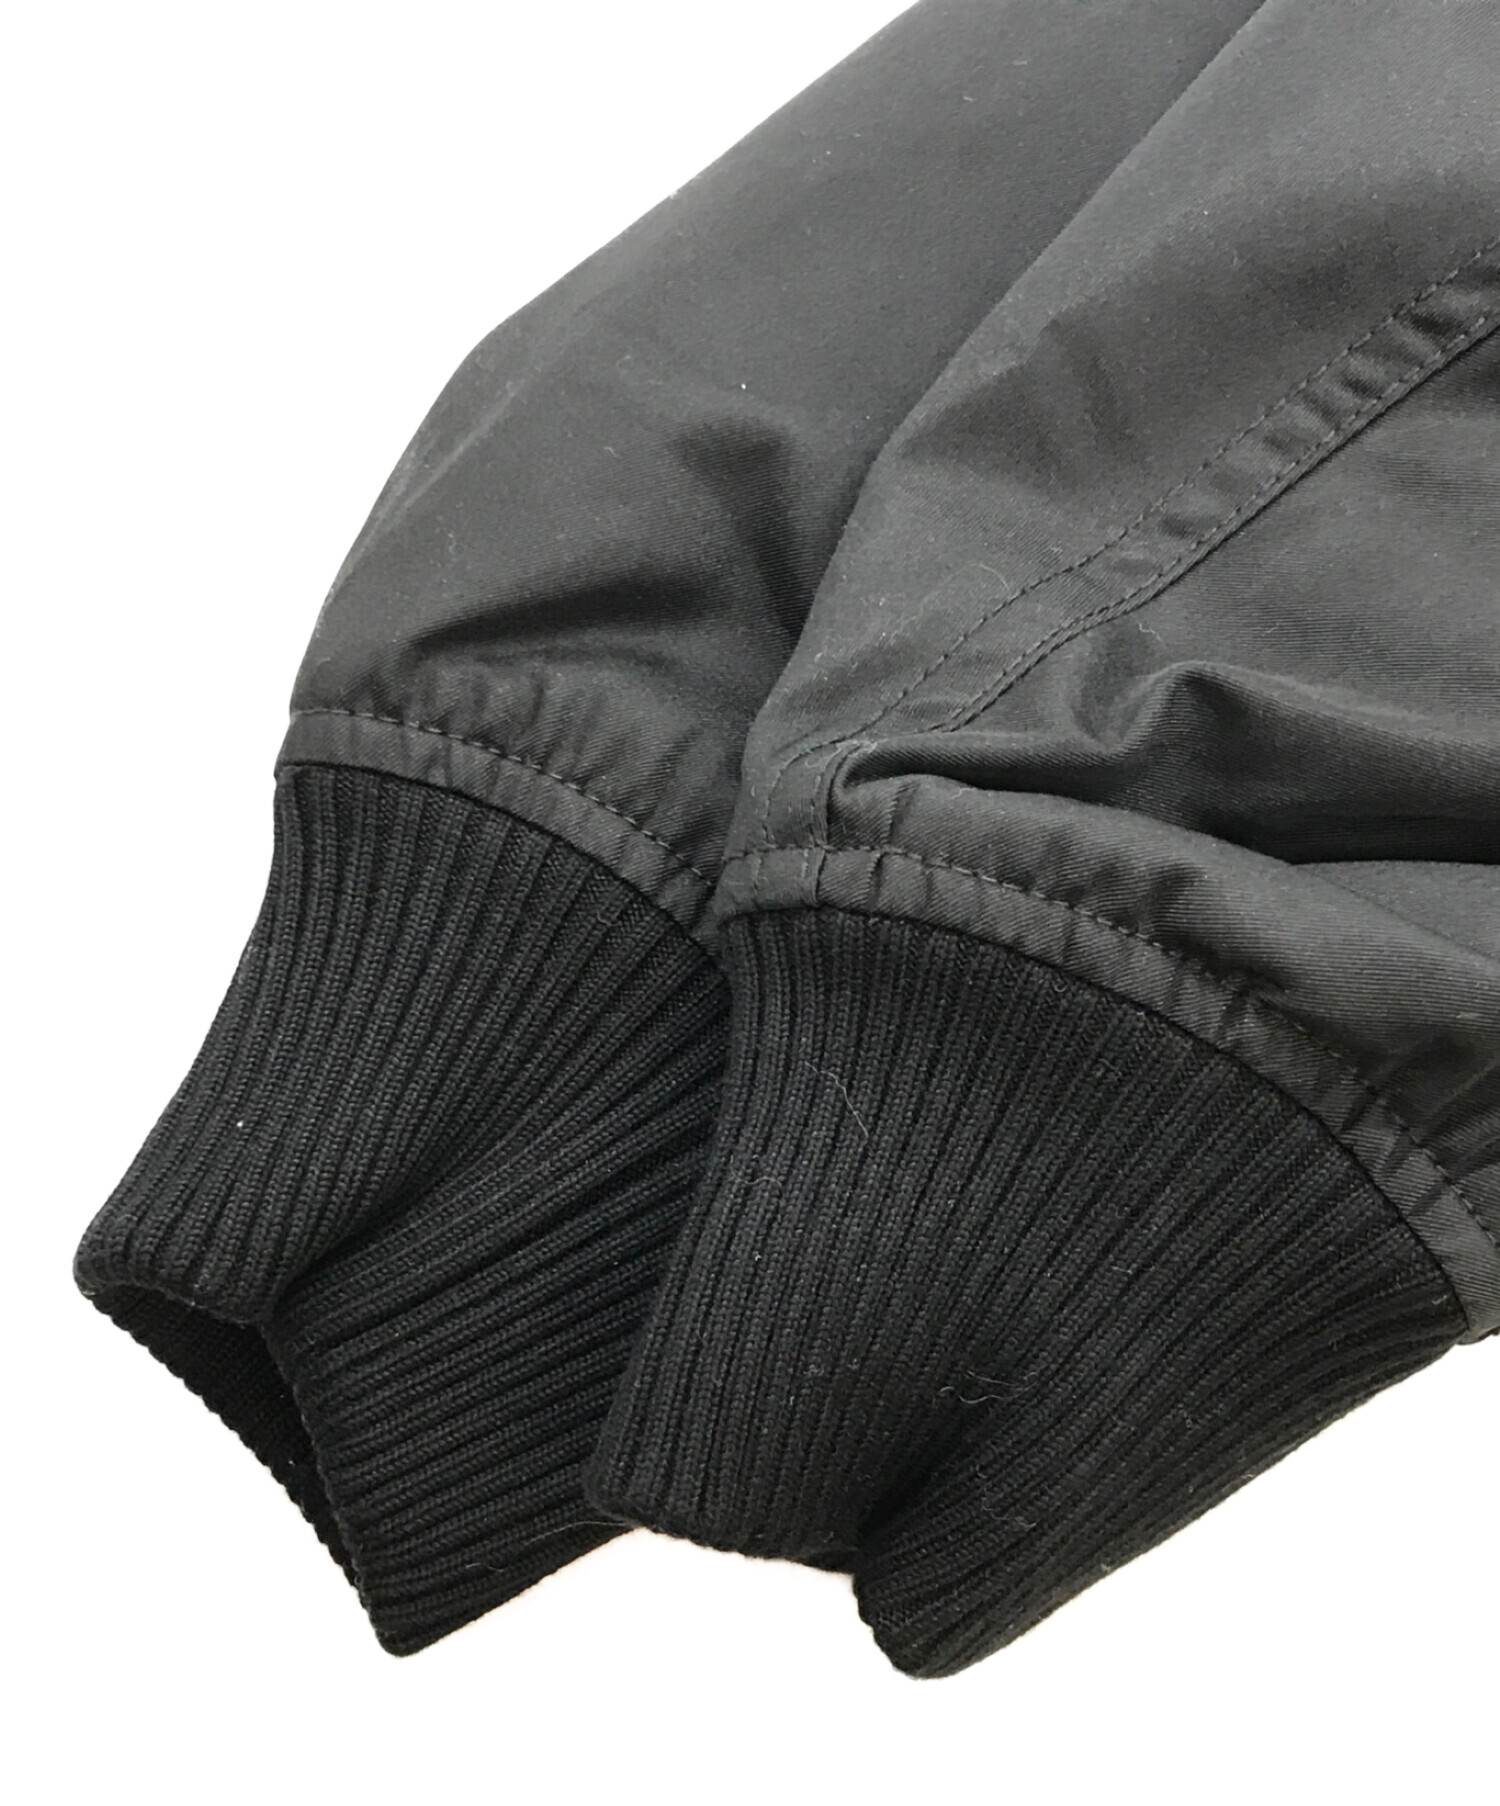 ReZARD (リザード) ロゴMA-1ジャケット ブラック サイズ:M